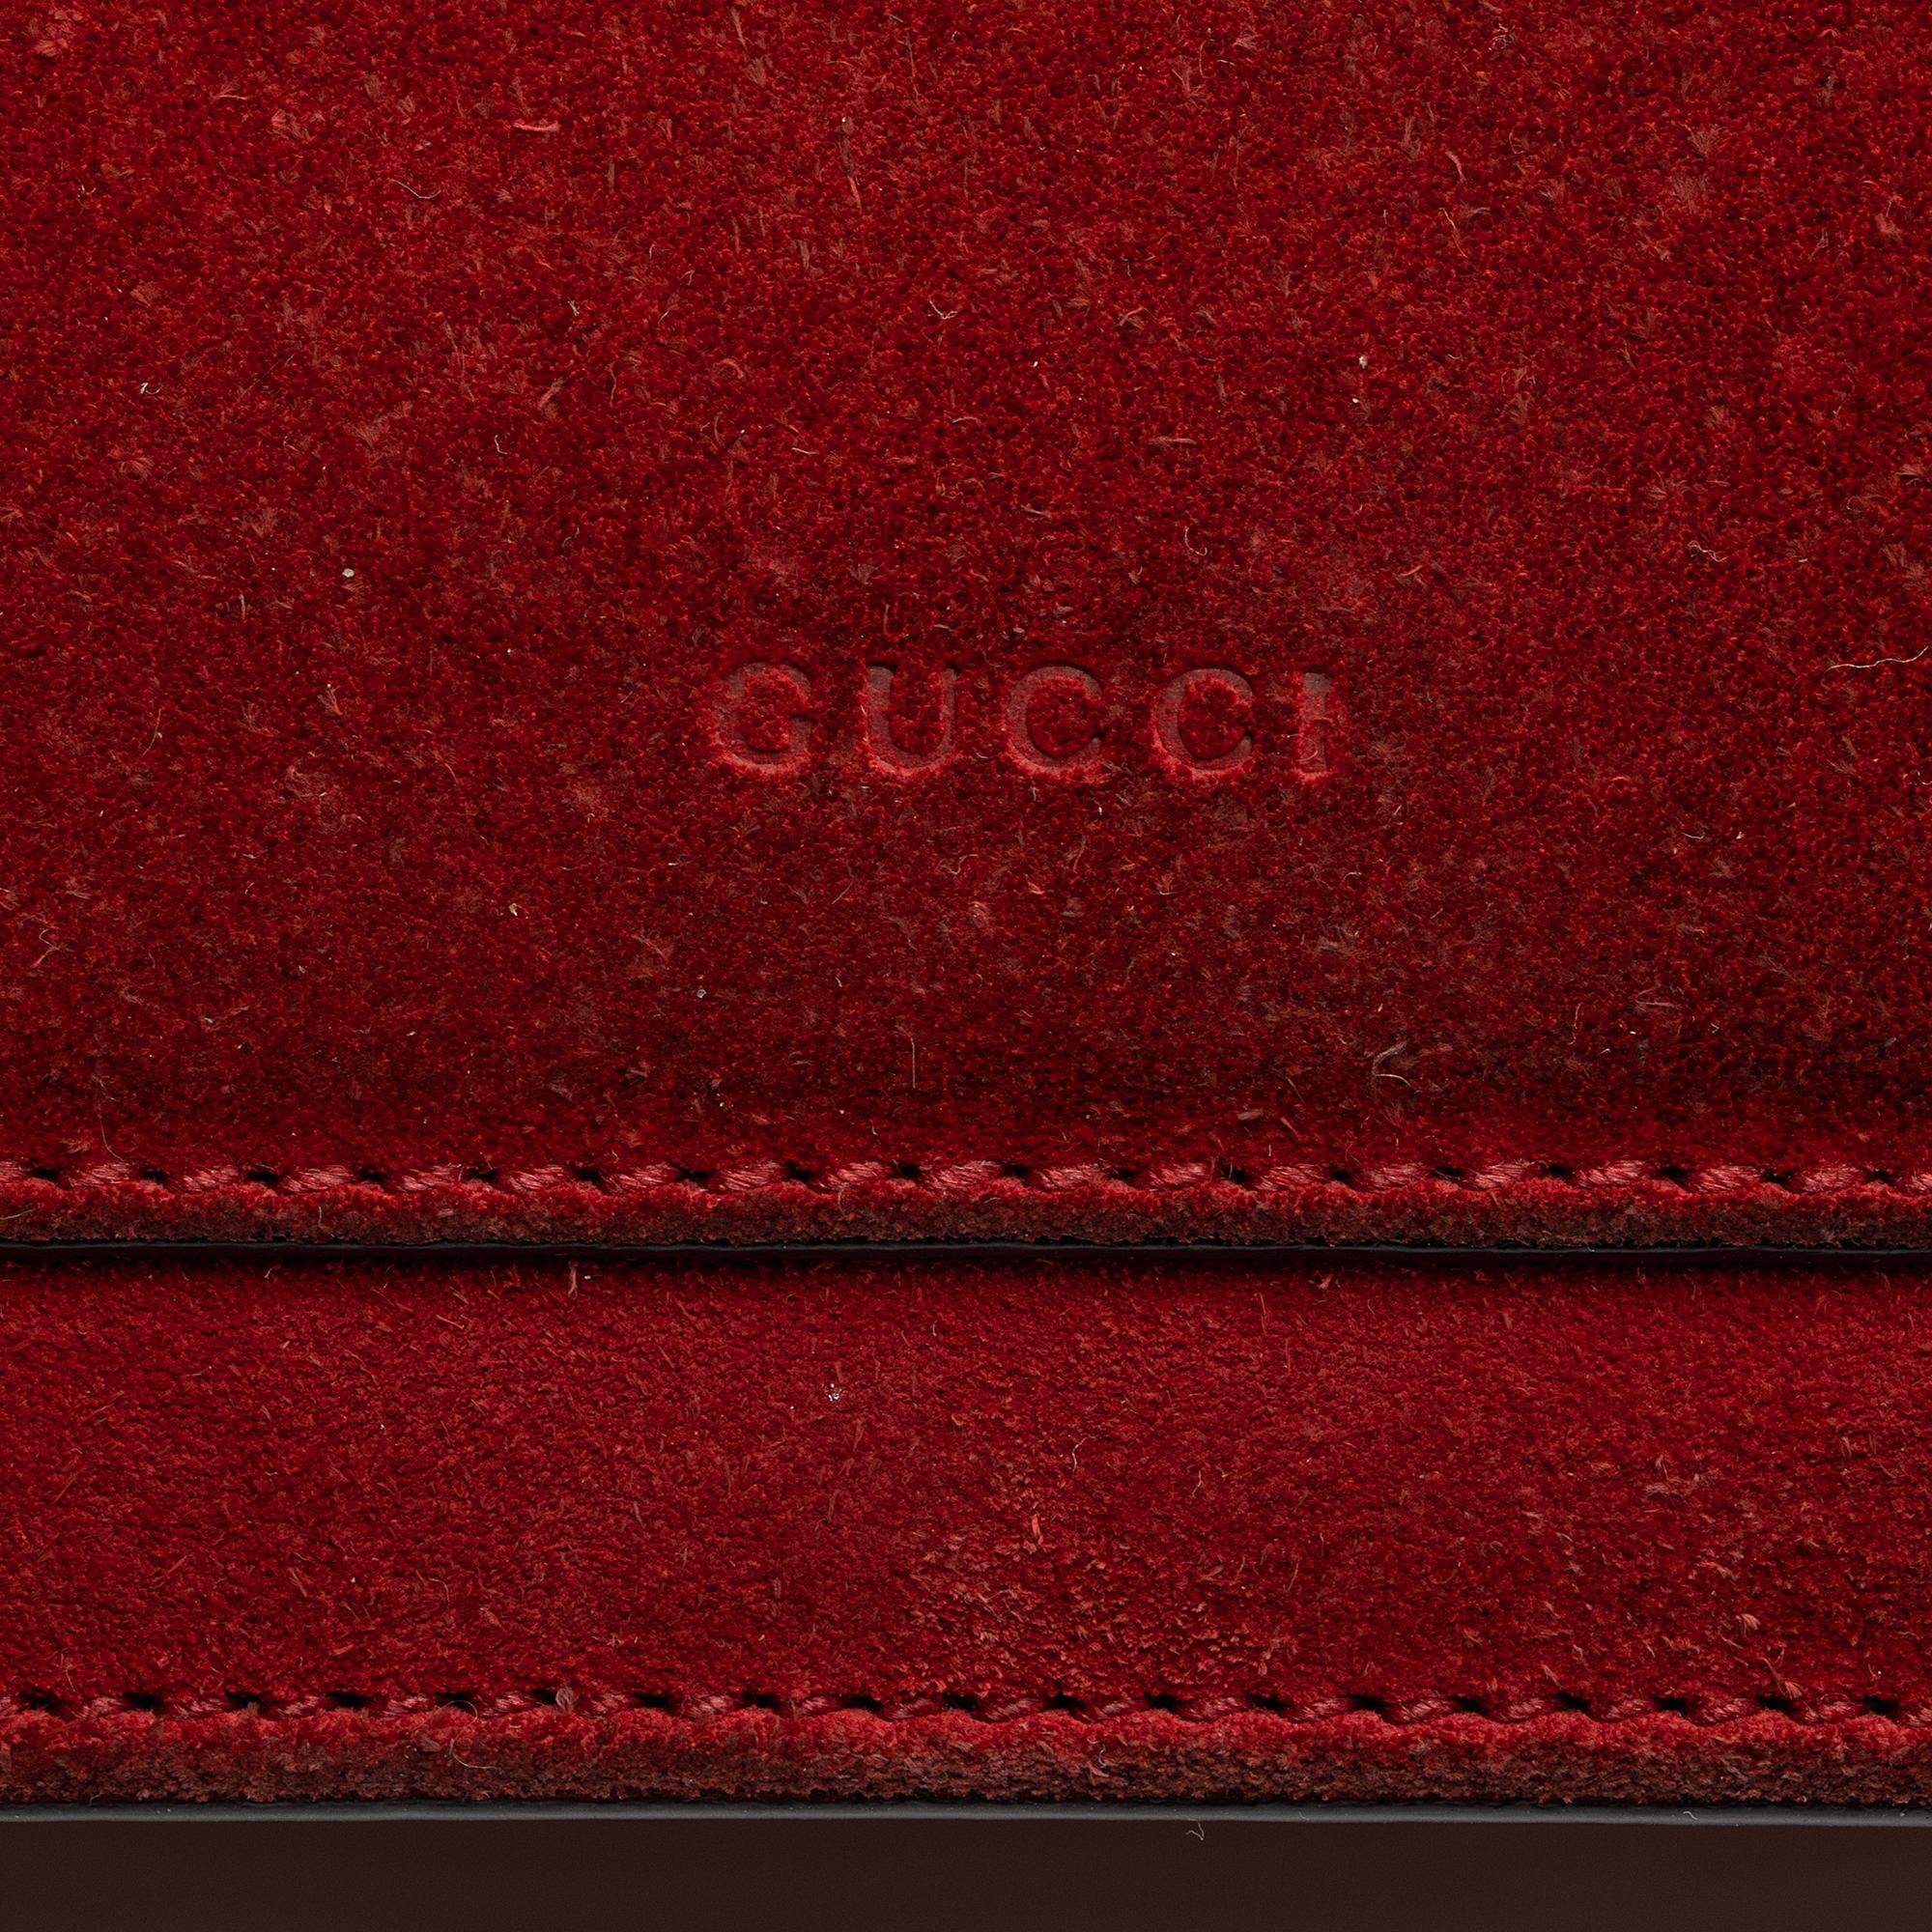 Gucci Suede Dionysus Medium Shoulder Bag